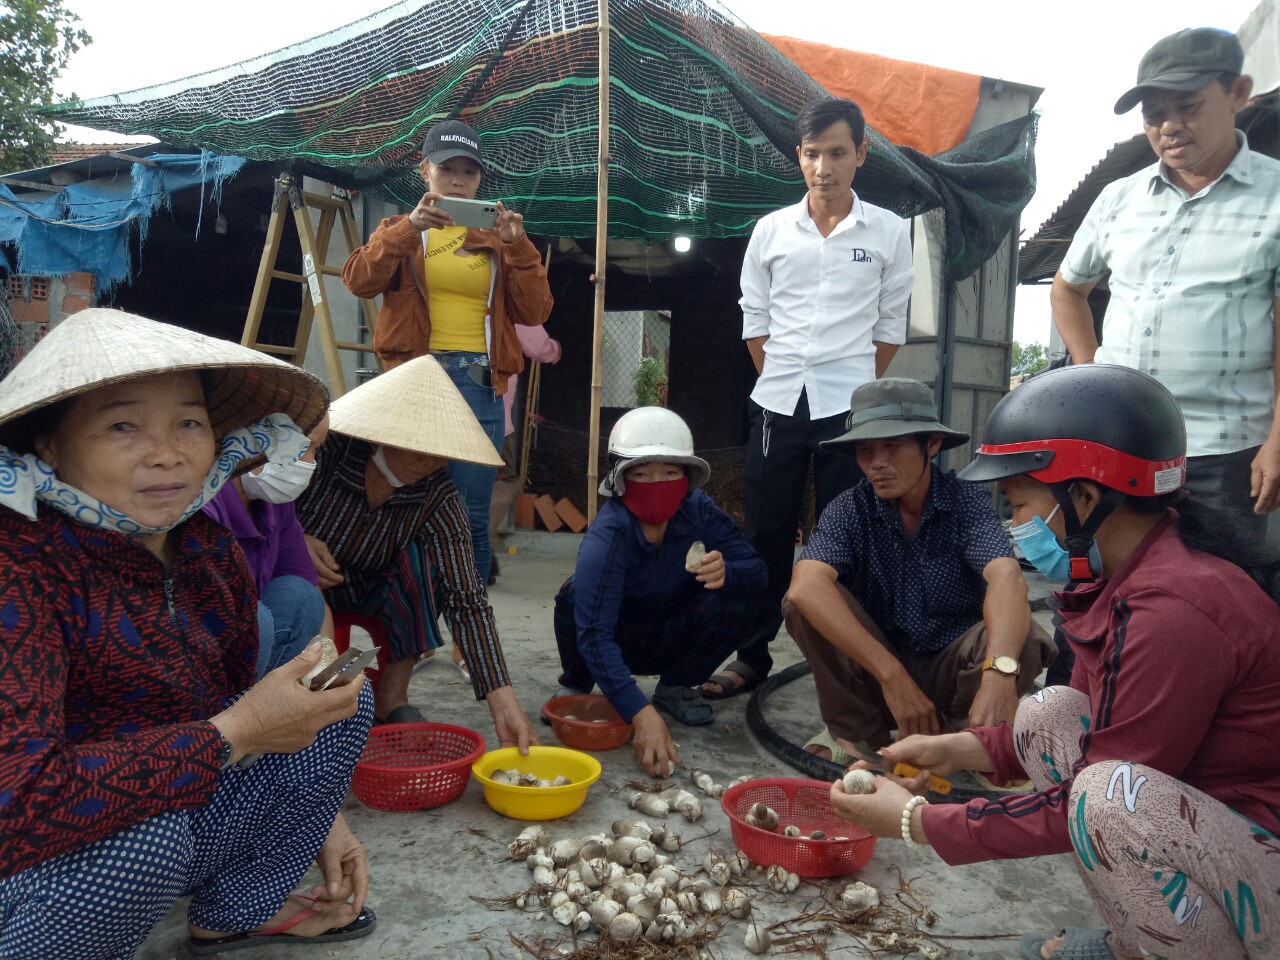 Trồng nấm giỏi, một nông dân ở Bình Định được mời làm giảng viên dạy nghề trồng nấm - Ảnh 2.